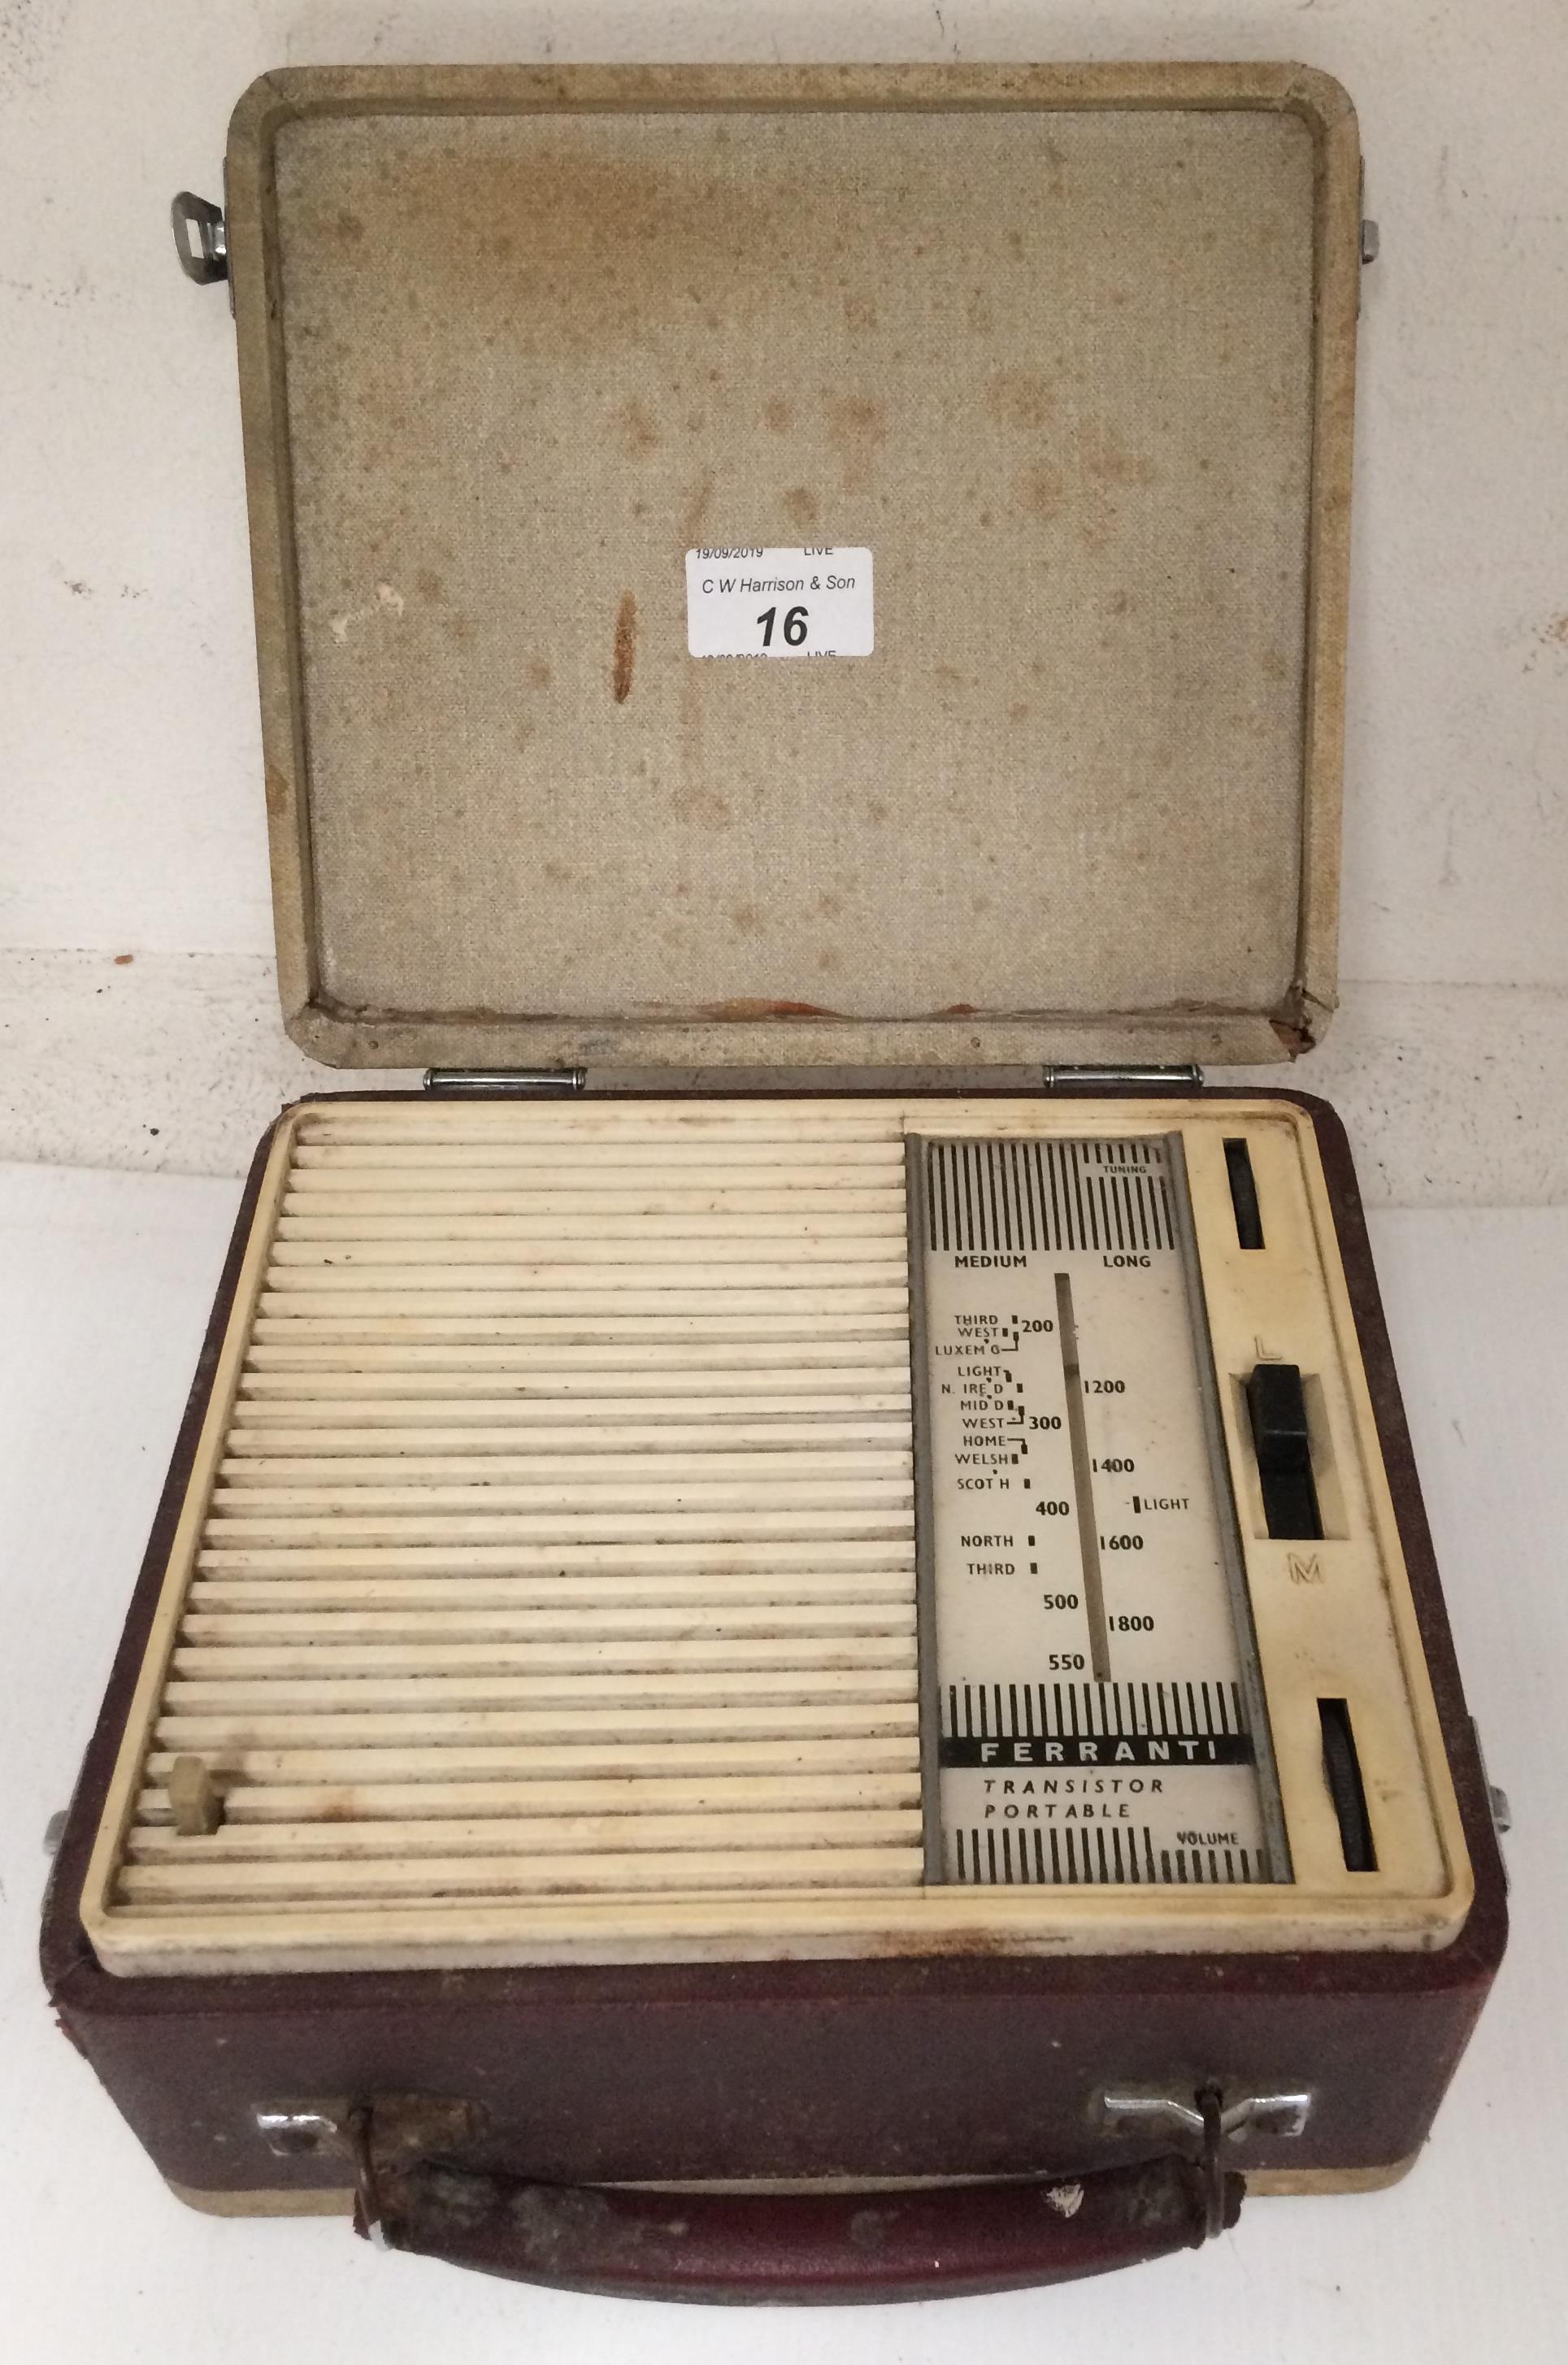 A Ferranti transistor portable radio